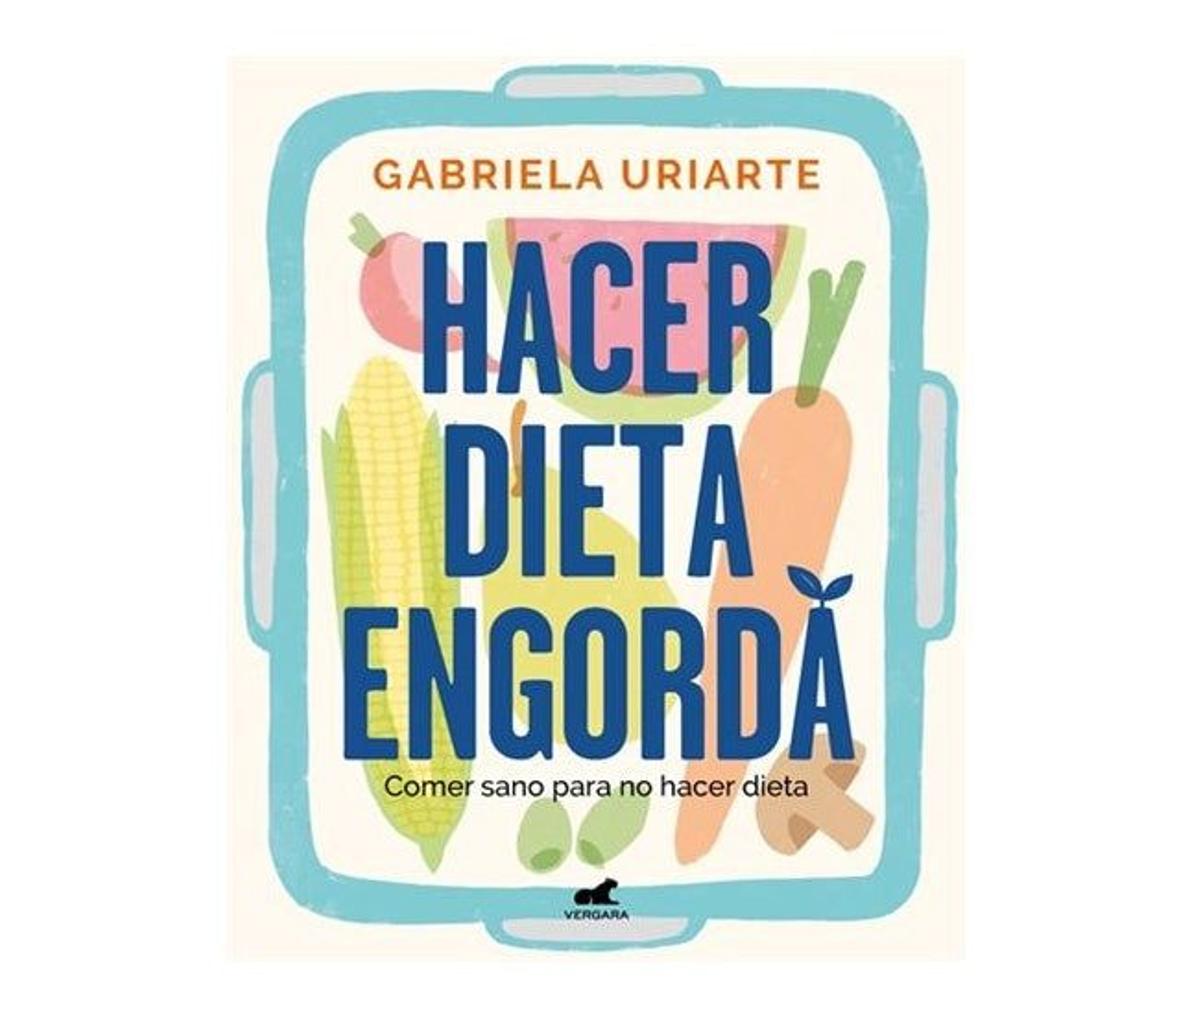 1. PARA APRENDER A COMER, DE UNA VEZ POR TODAS: Hacer dieta engorda (Gabriela Uriarte, Editorial Vergara, 2021)